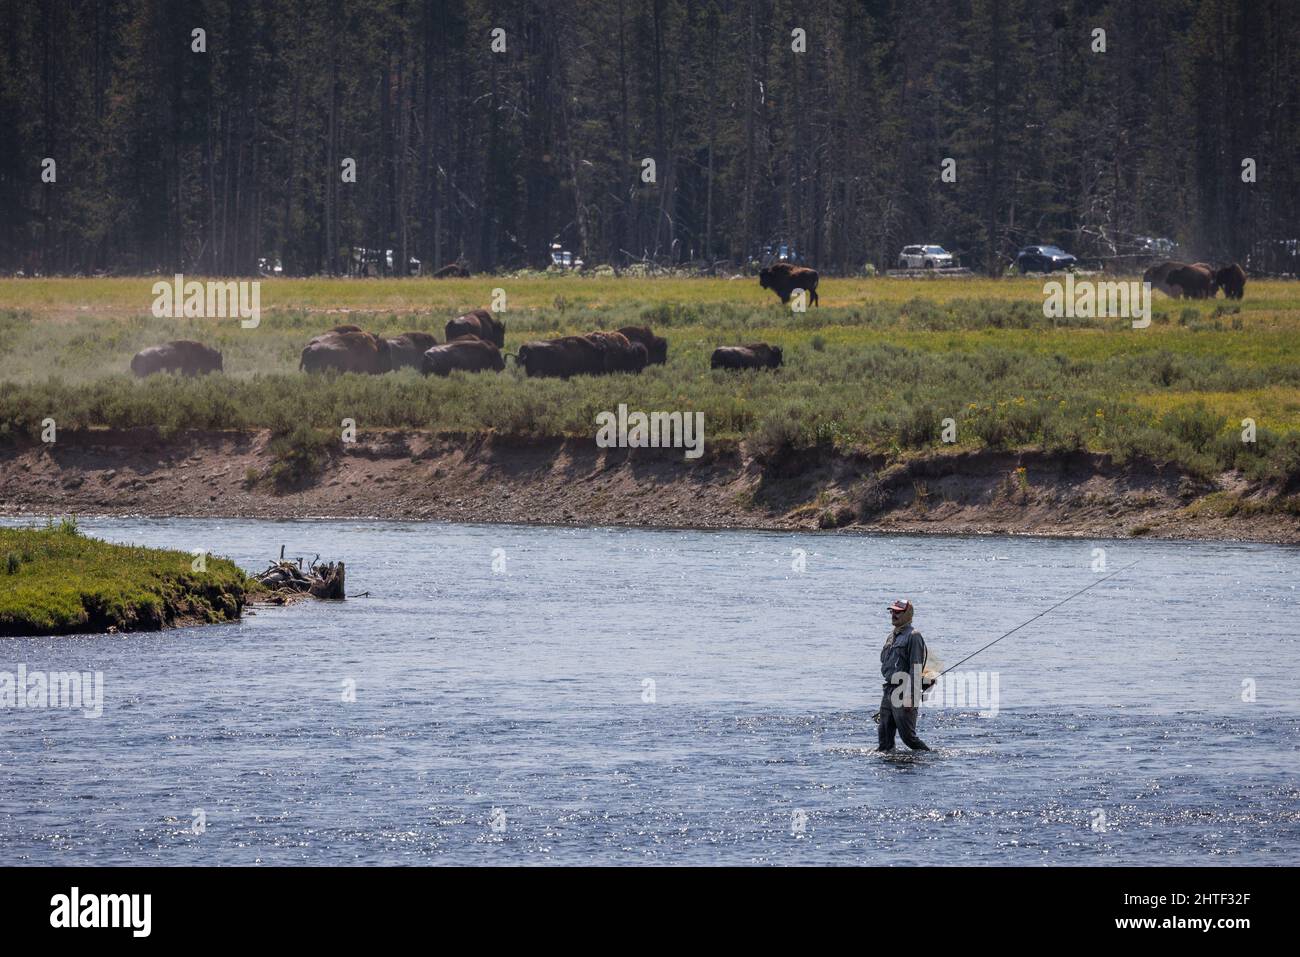 Un pescador de moscas cruza el río Yellowstone cerca de una manada de bisontes. Foto de stock